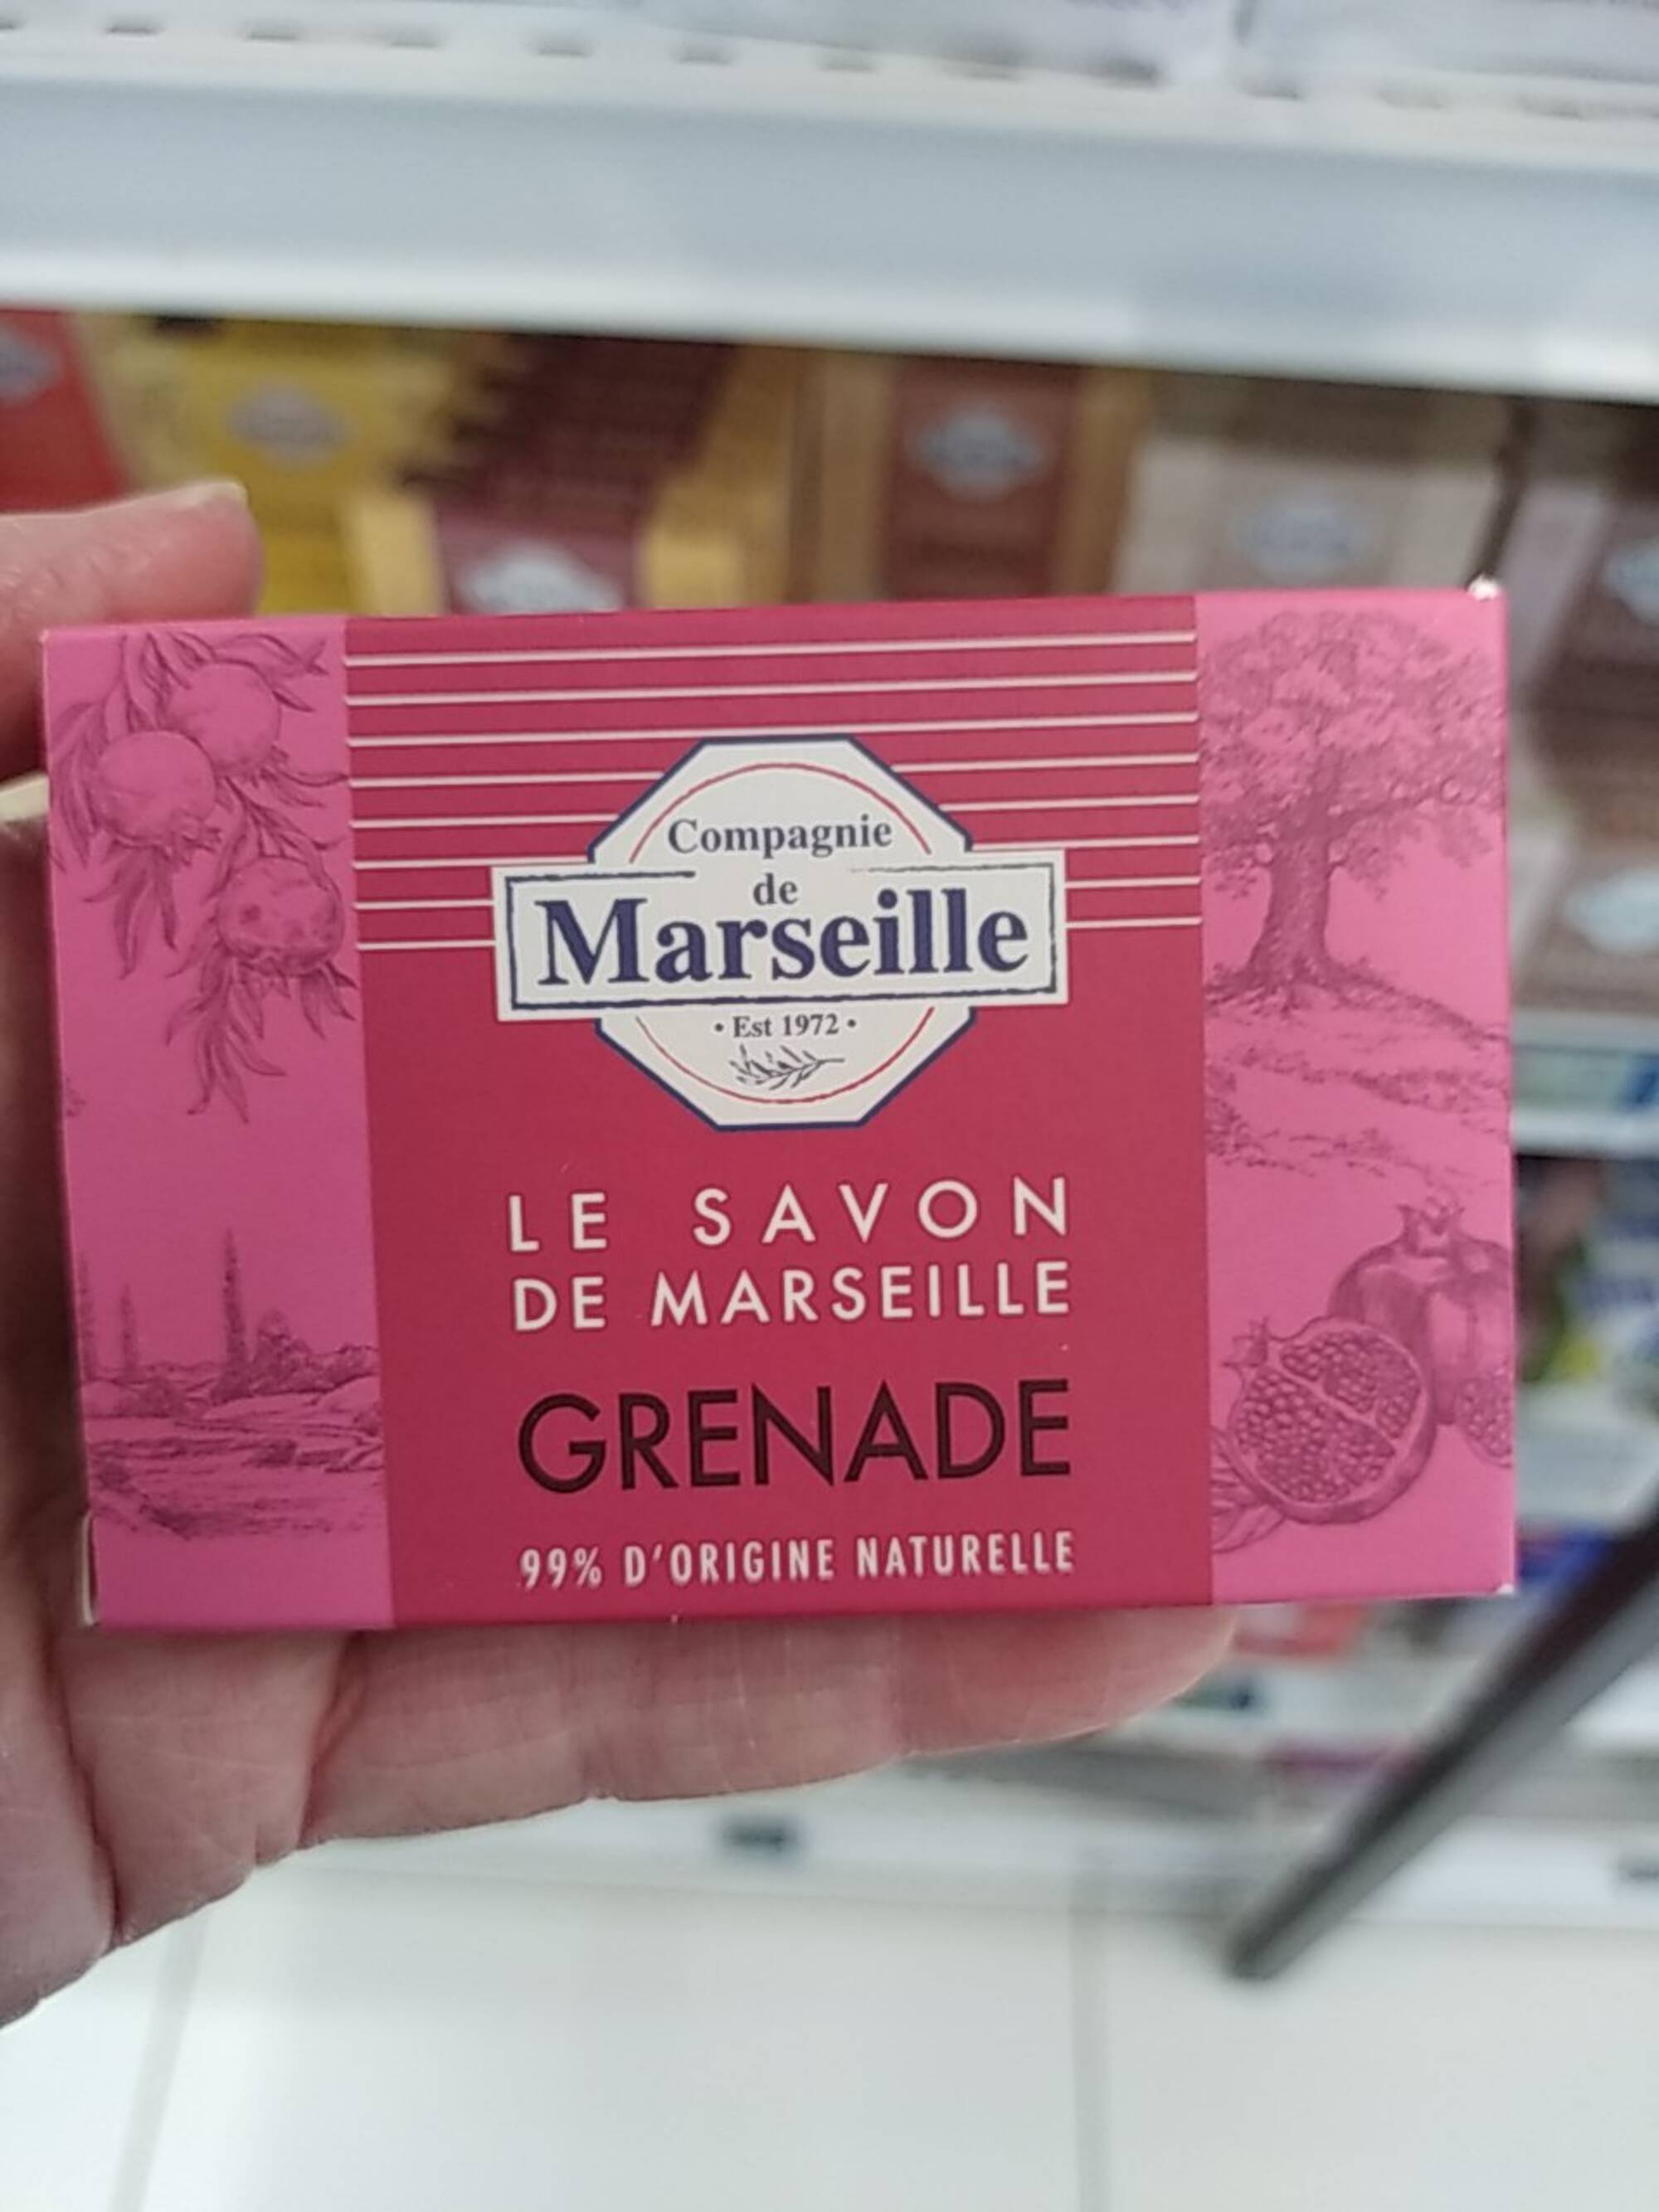 COMPAGNIE DE MARSEILLE - Grenade - Le savon de Marseille